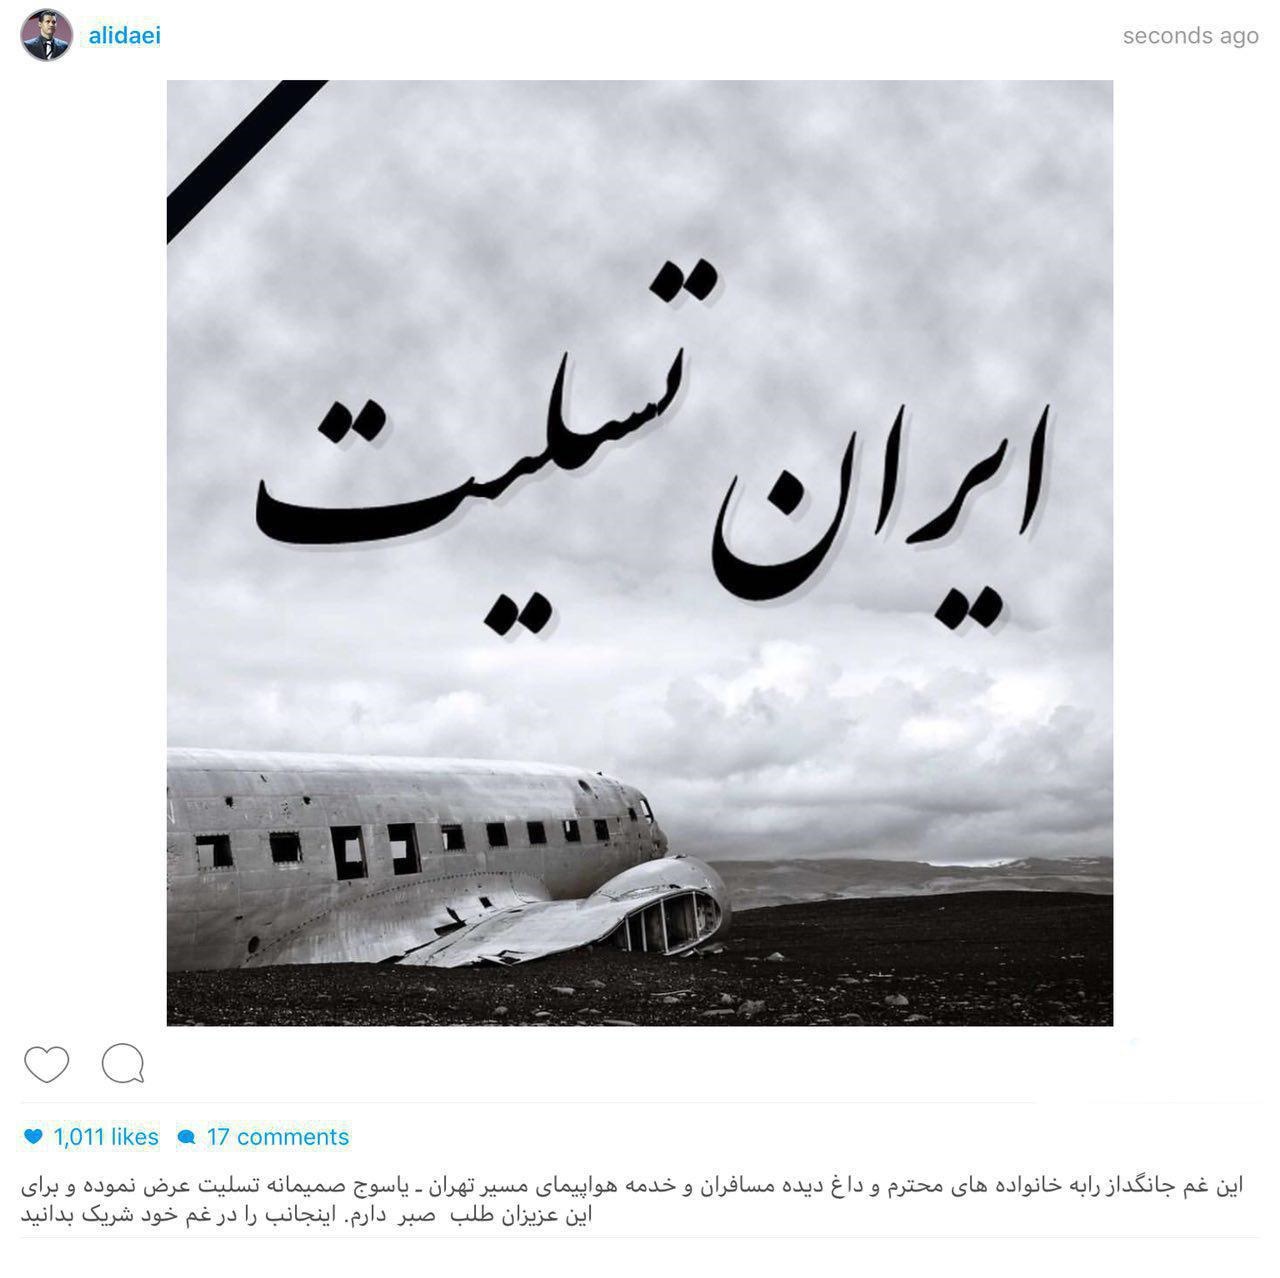 تسلیت اینستاگرامی علی دایی برای سقوط هواپیمای یاسوج